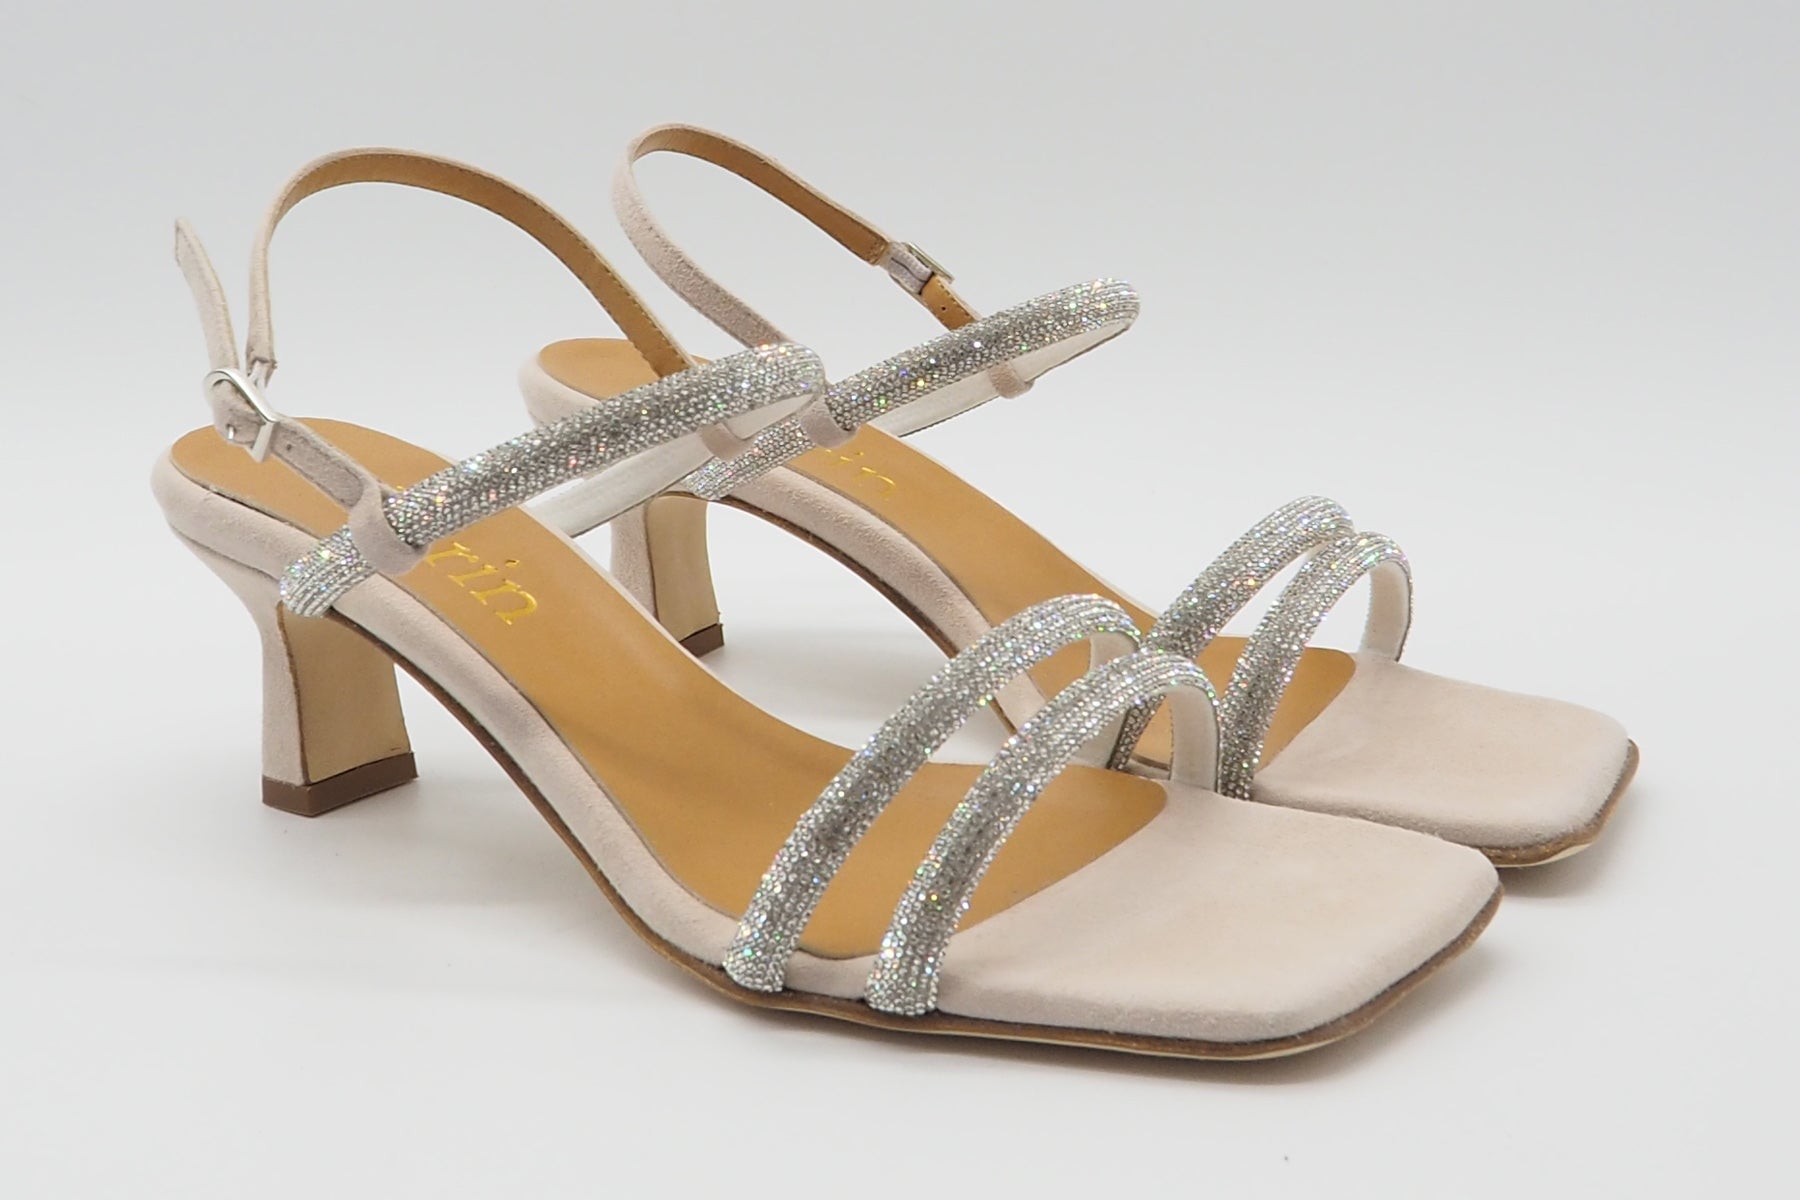 Edle Damen Absatz-Sandale aus Veloursleder in Nude mit Steinen besetzten Bänder - Absatz 6cm Damen Sandalen Karin 